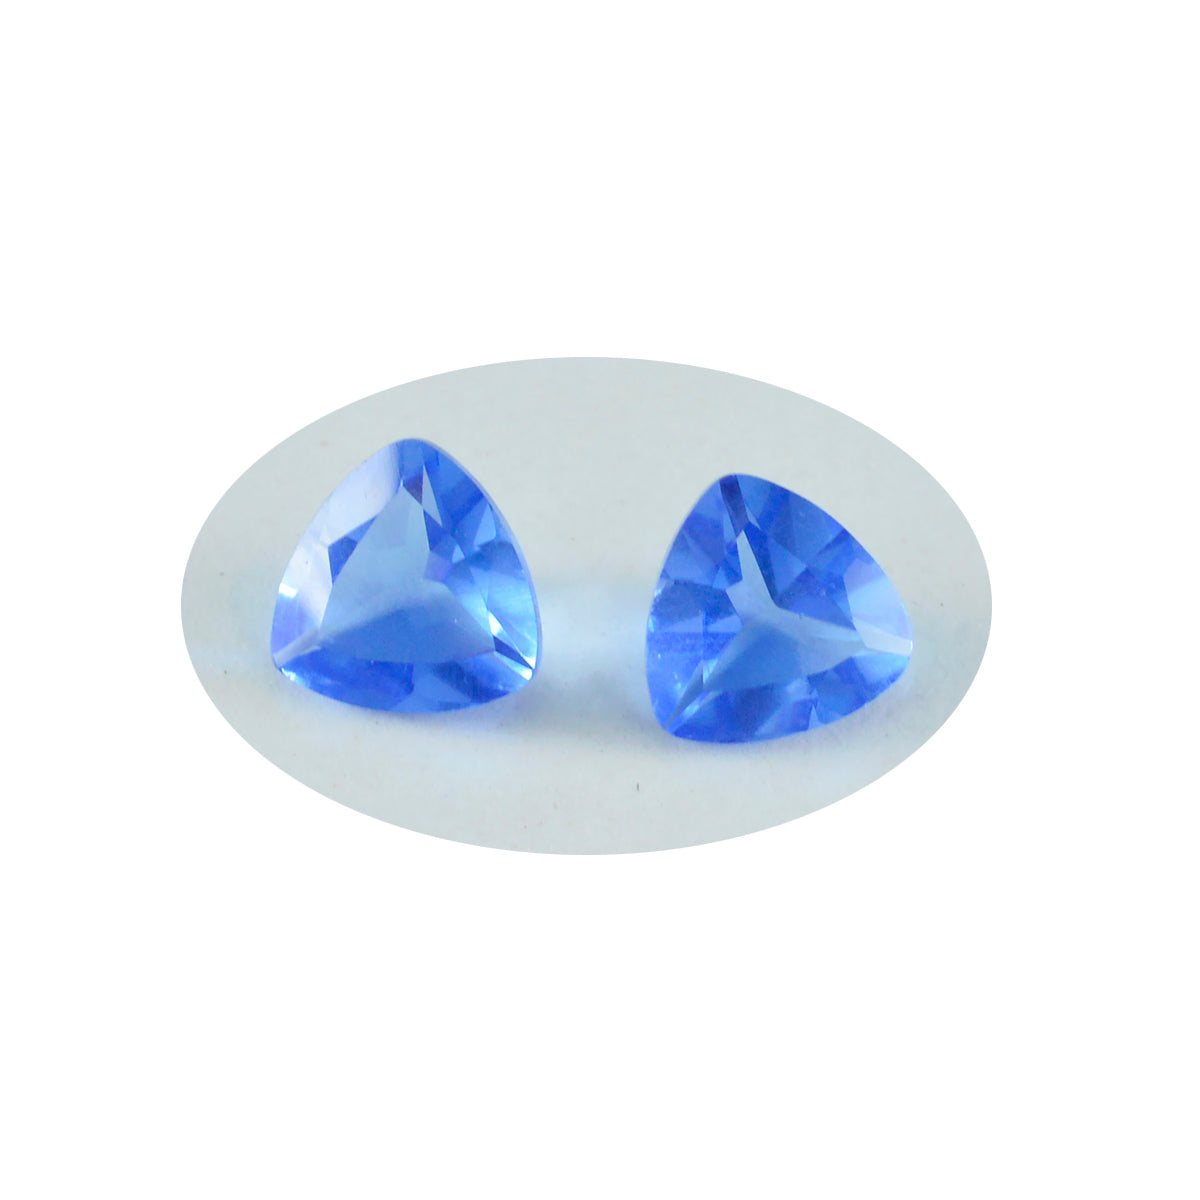 riyogems 1 шт. синий сапфир cz ограненный 13x13 мм форма триллион удивительного качества свободный драгоценный камень